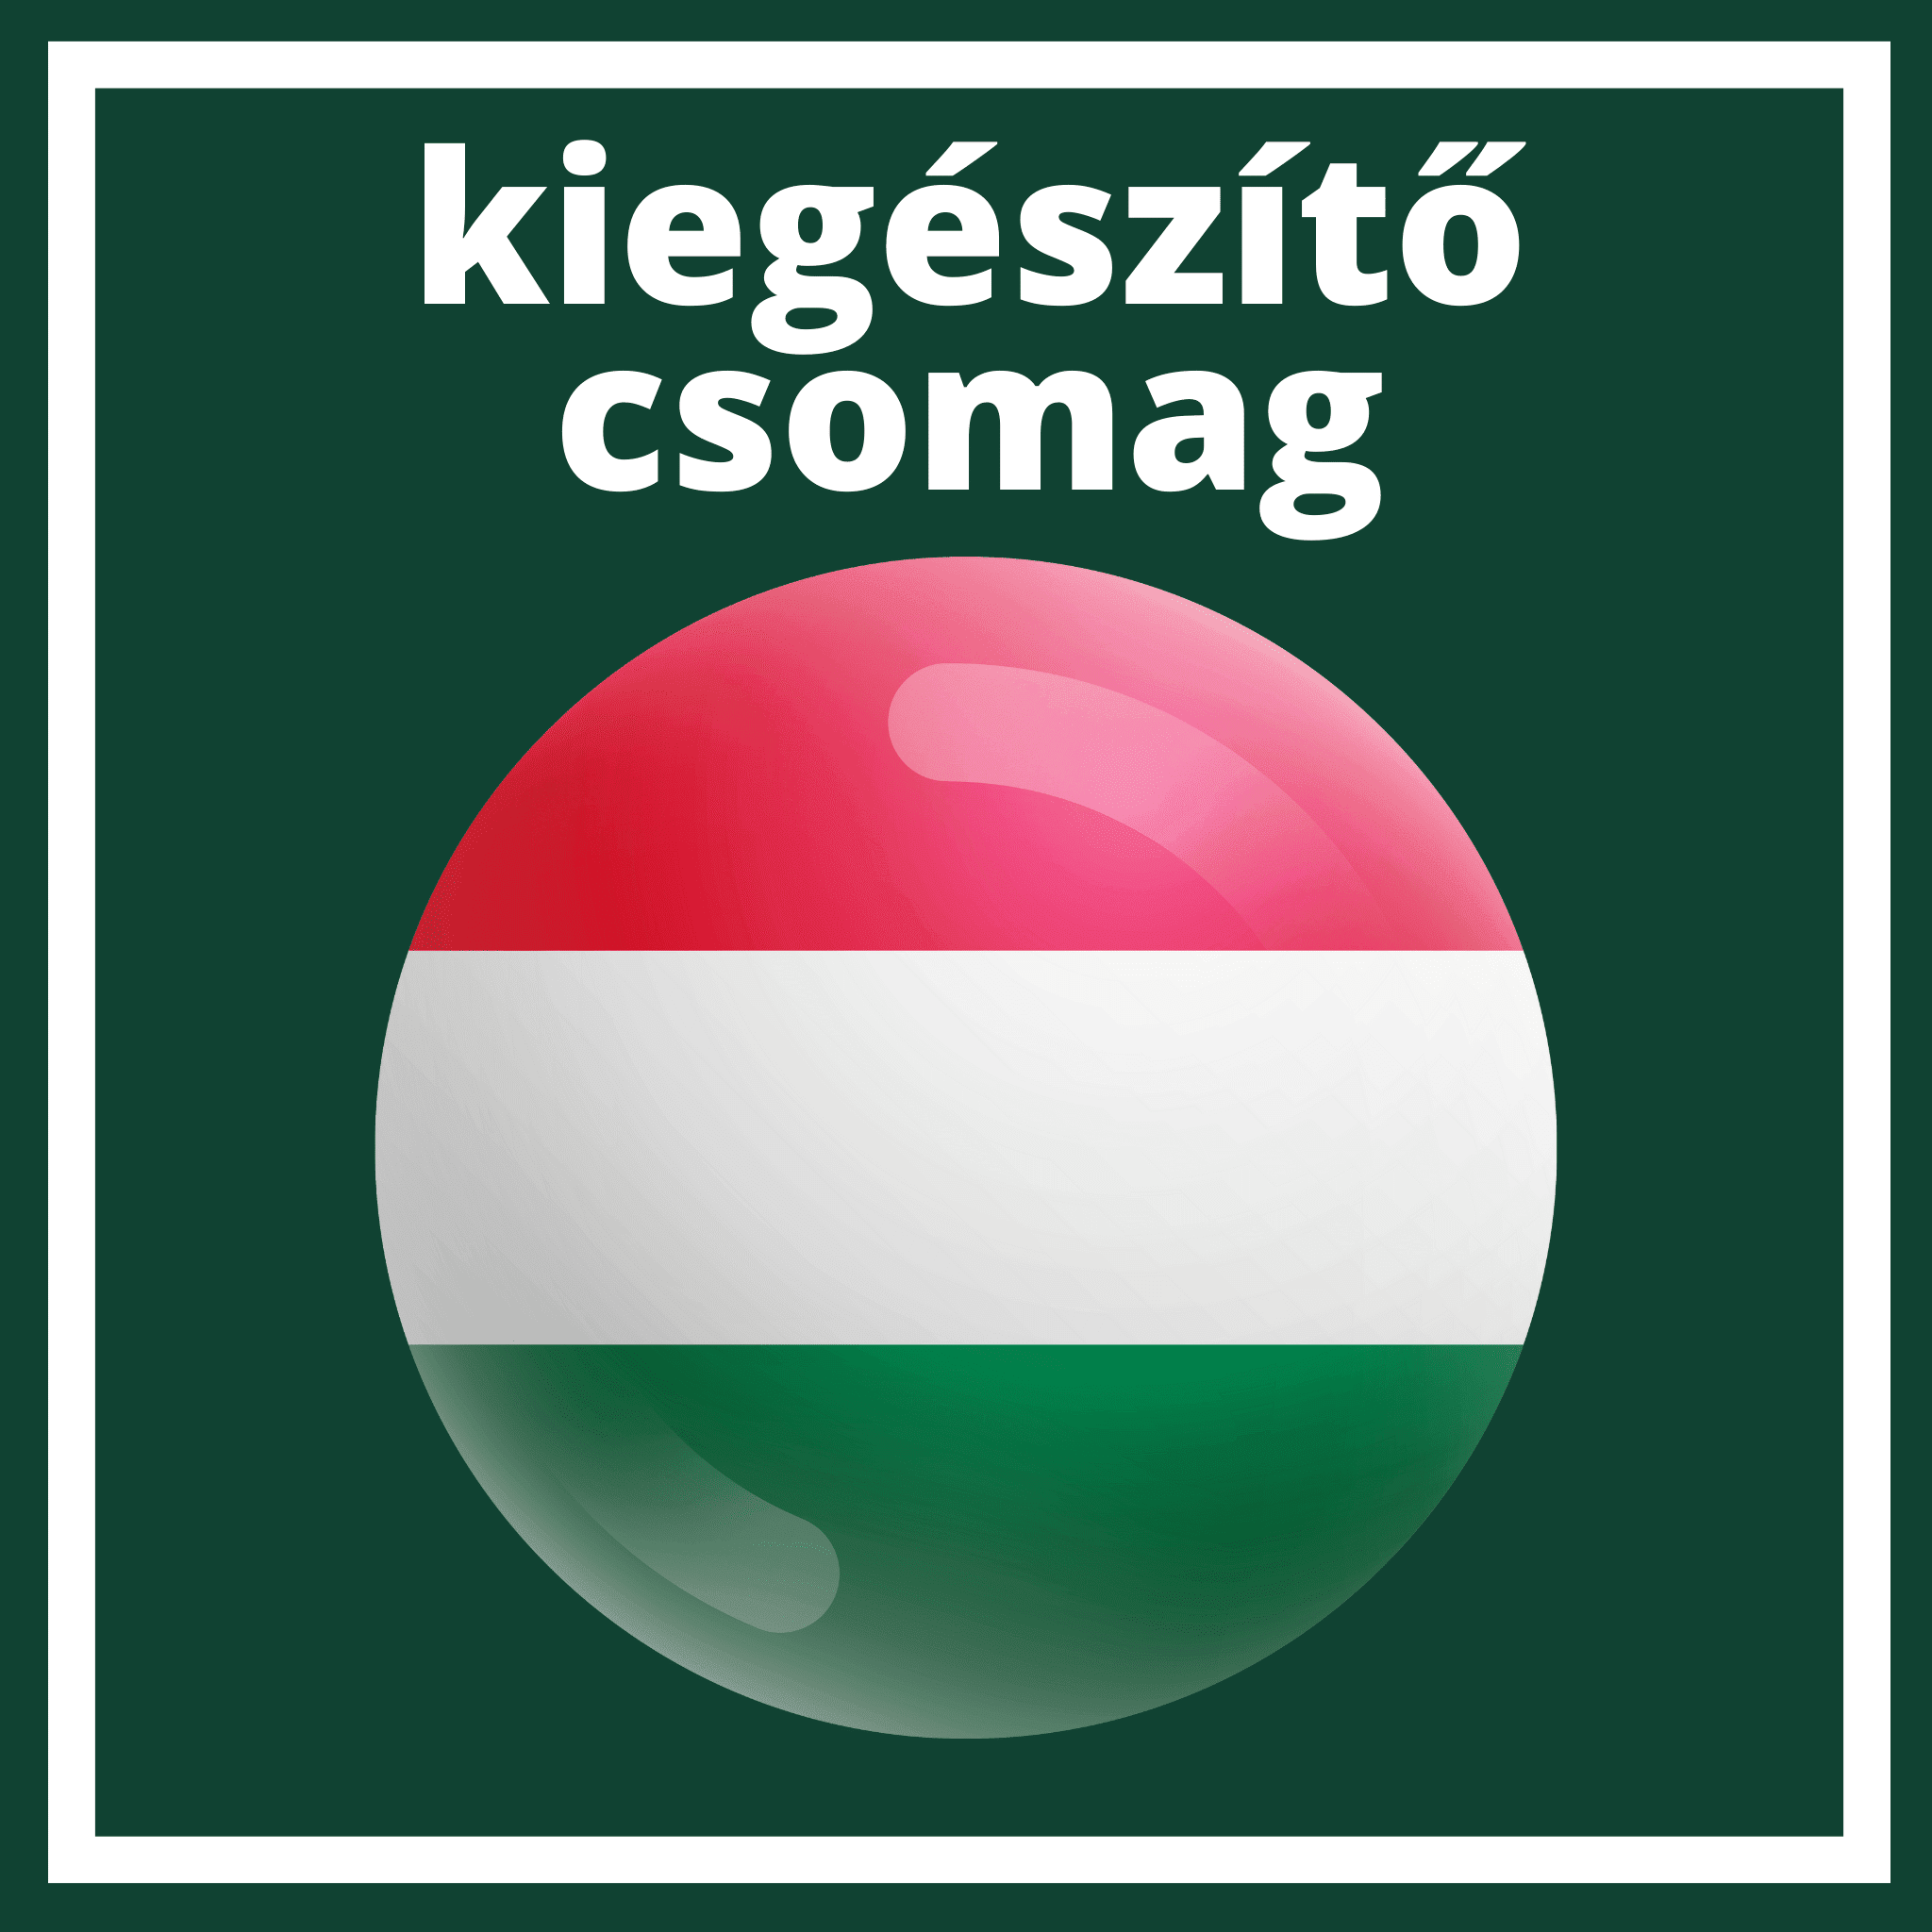 Paquete adicional Hungría